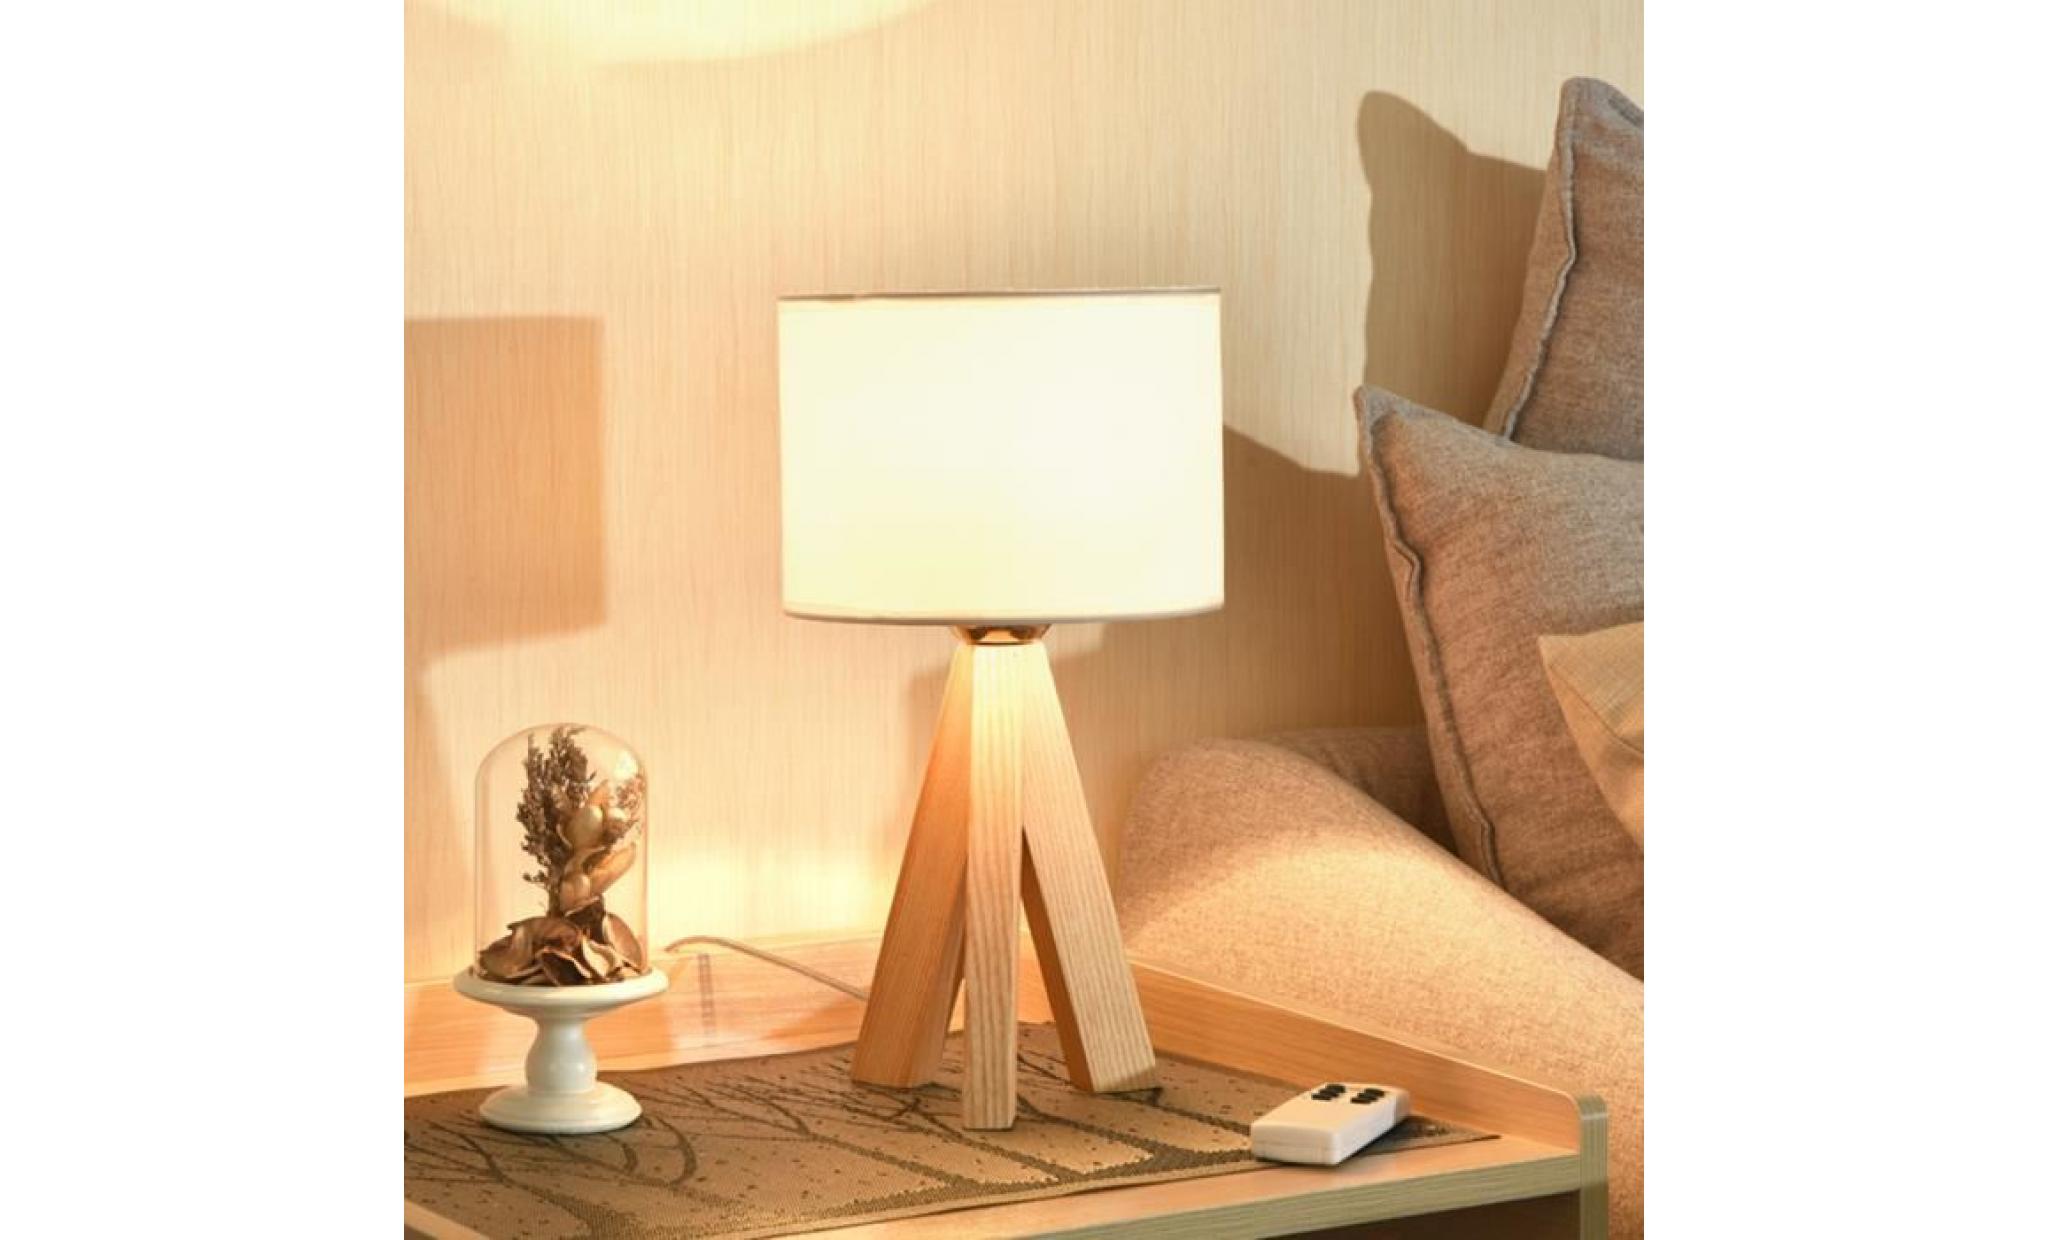 lampe à poser naturel bois trépied e27 h 23 cm x Ø18 cm abat jour tissu lampe de chevet table lampe salon chambre style minimaliste pas cher